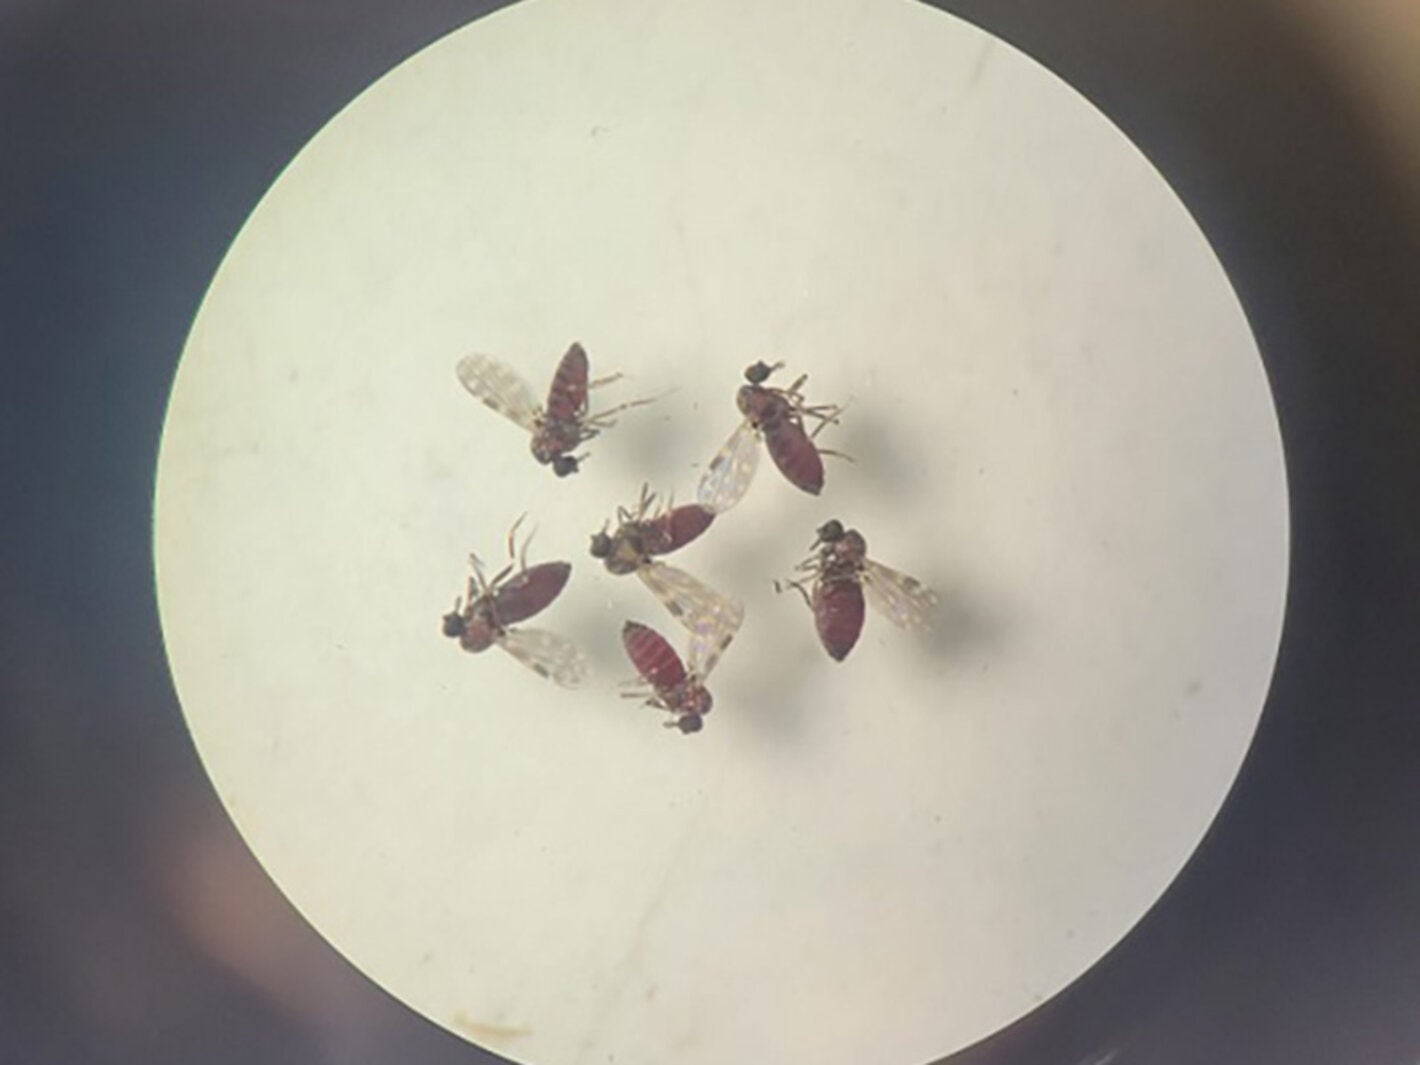 Culicoides paraensis. (Photos: Bruna Lais Sena do Nascimento, Laboratório de Entomologia Médica/SEARB/IEC)